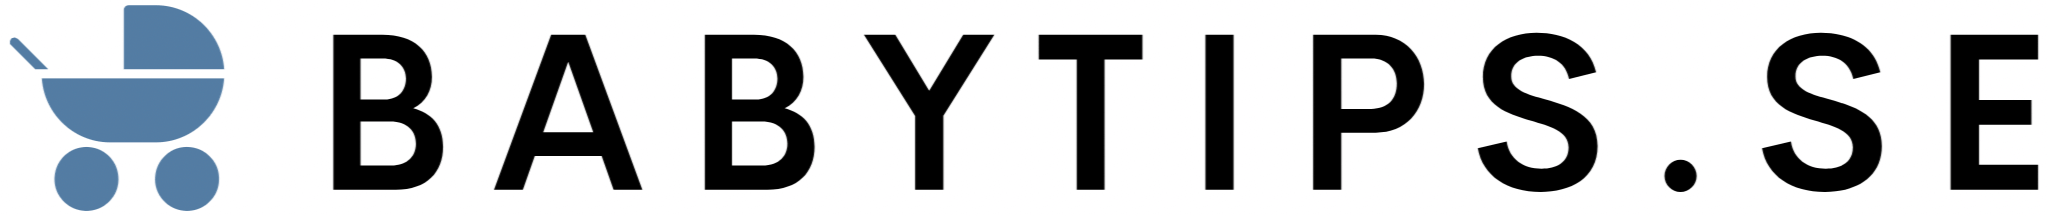 babytips logo